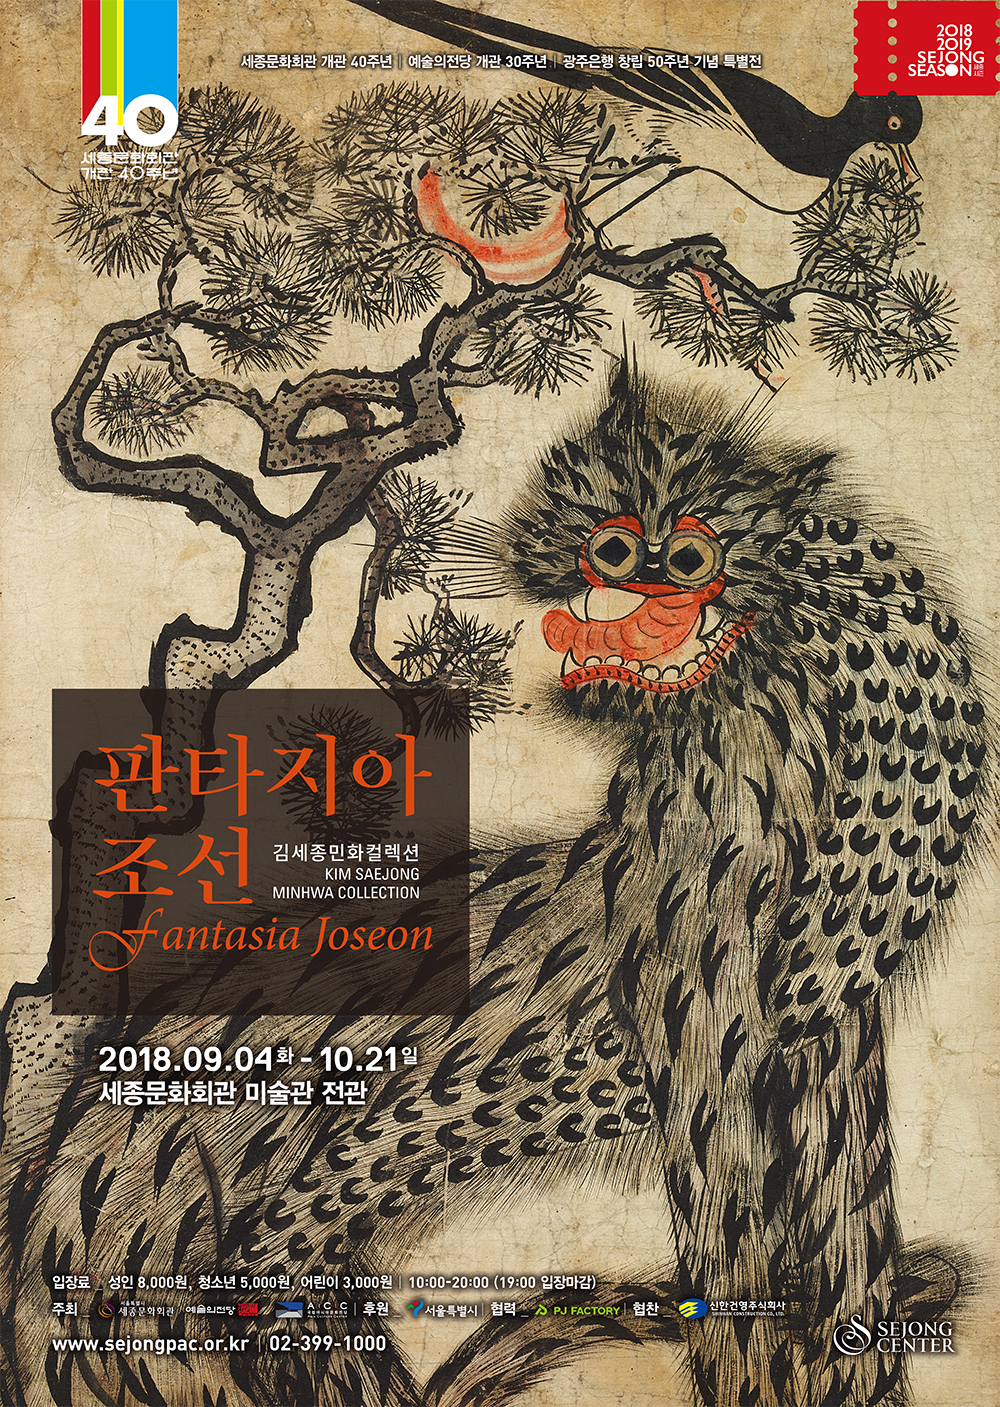  세종미술관 ’판타지아 조선’ 포스터  세종미술관 제공 